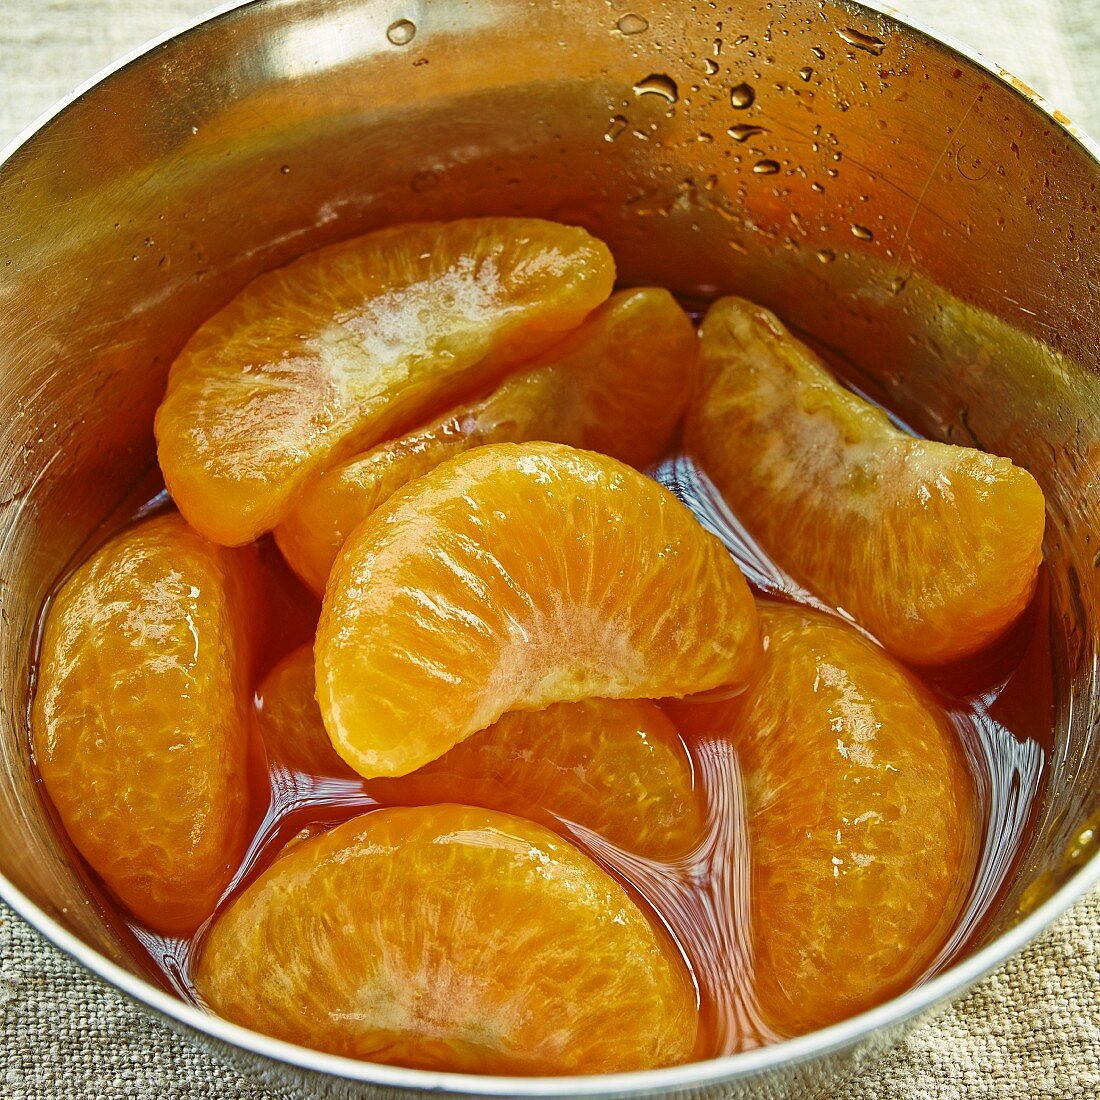 Mandarin segments